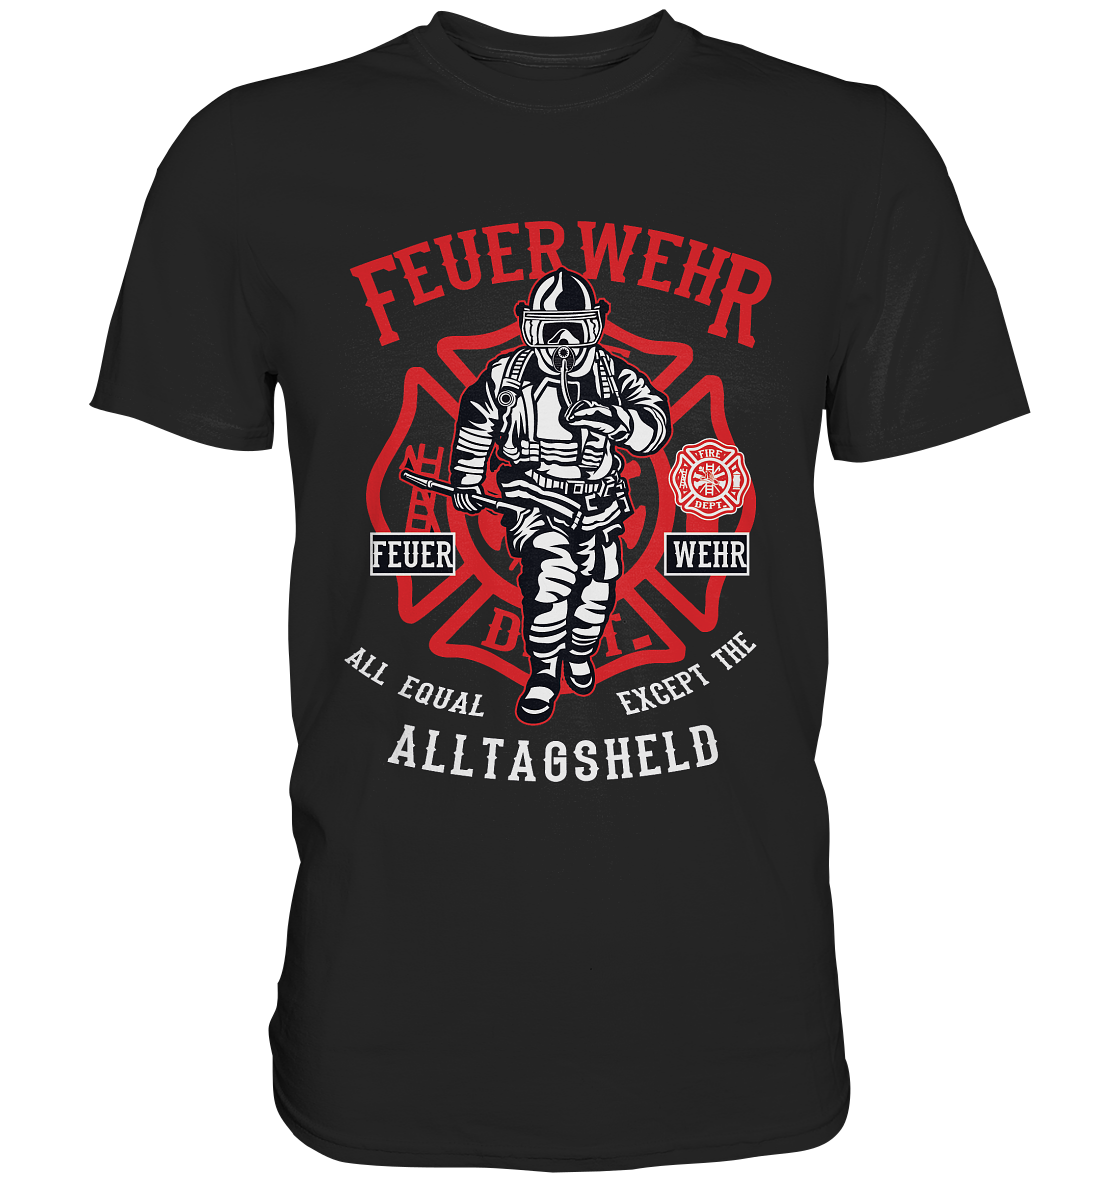 Feuerwehr-Alltagsheld Design Premium Shirt - Baufun Shop